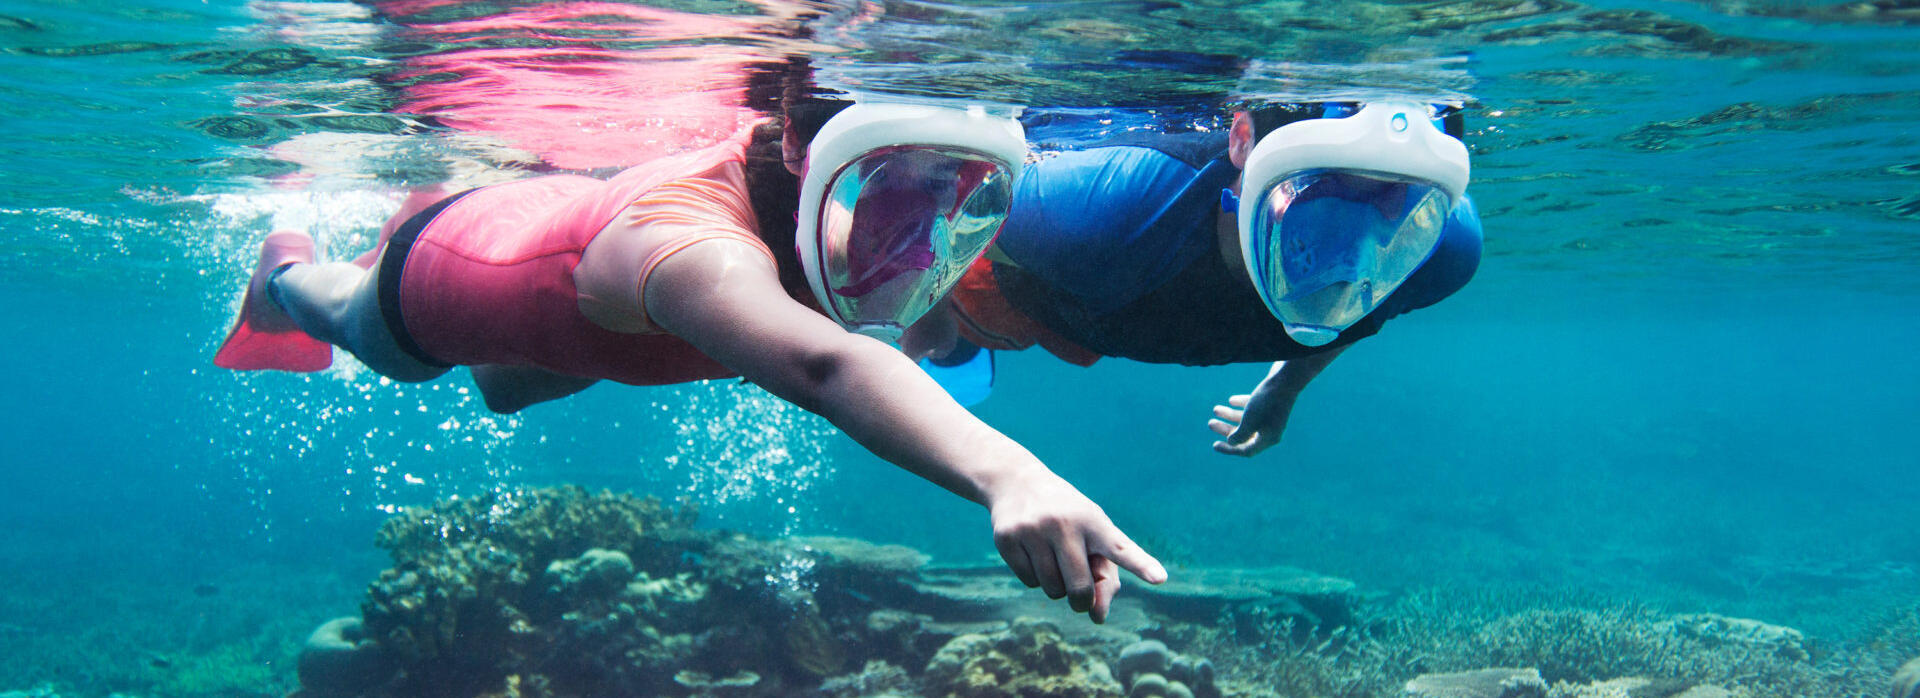 À descoberta dos gestos ecológicos no snorkeling